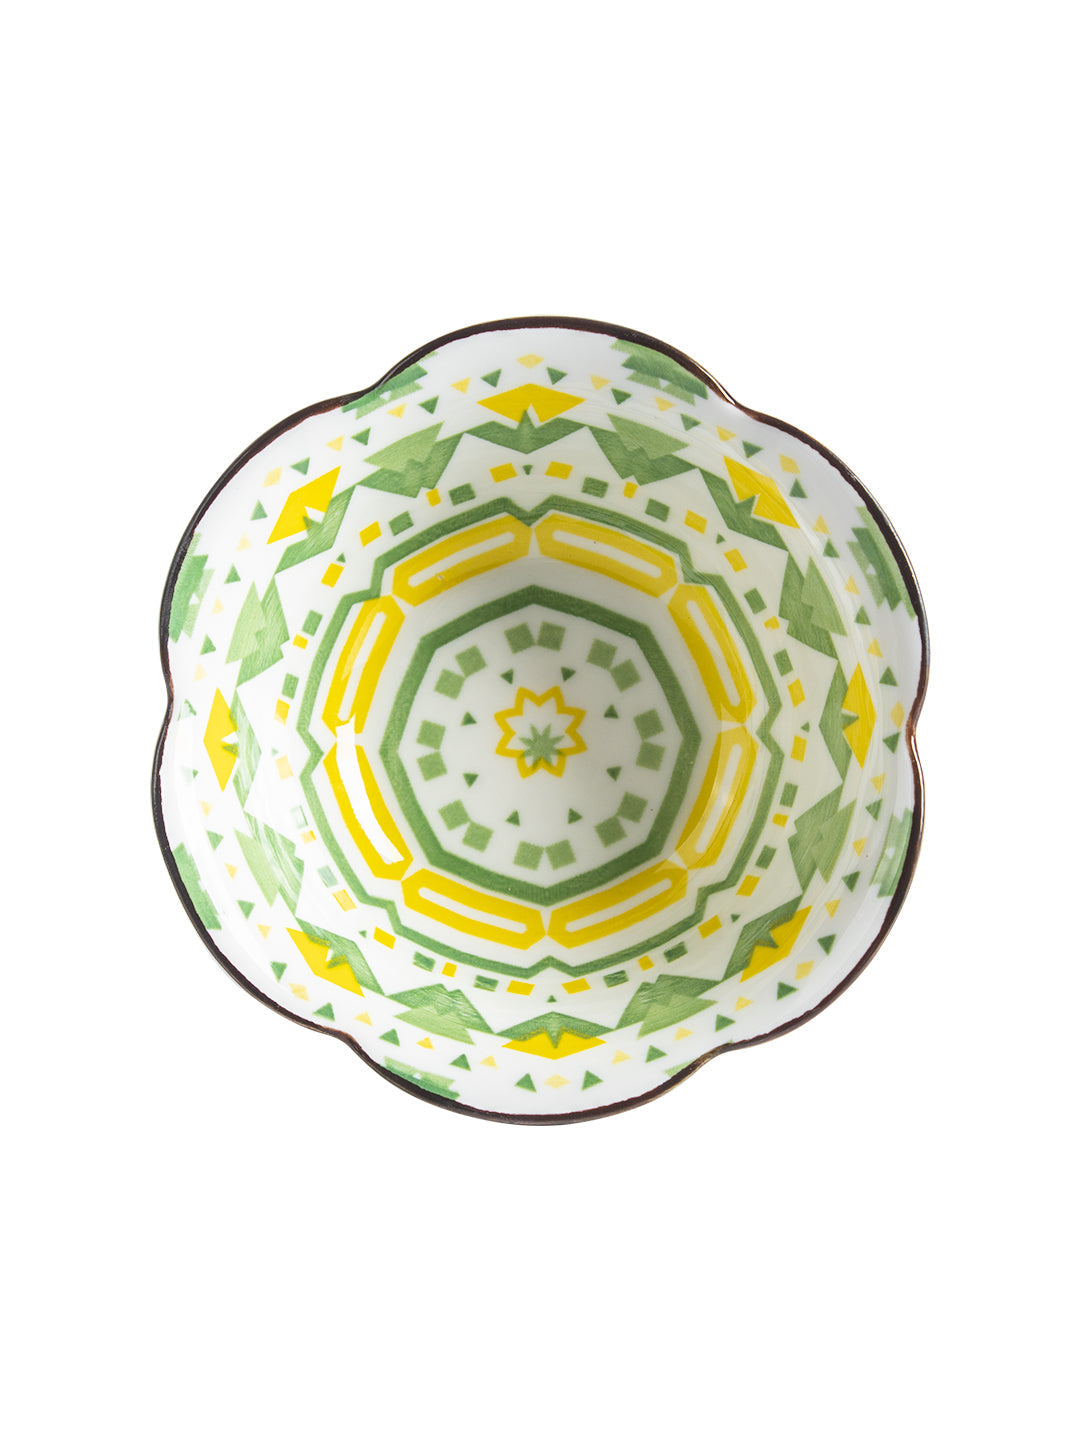 VON CASA 120 Ml Ceramic Serving Bowls - Green, Set Of 2